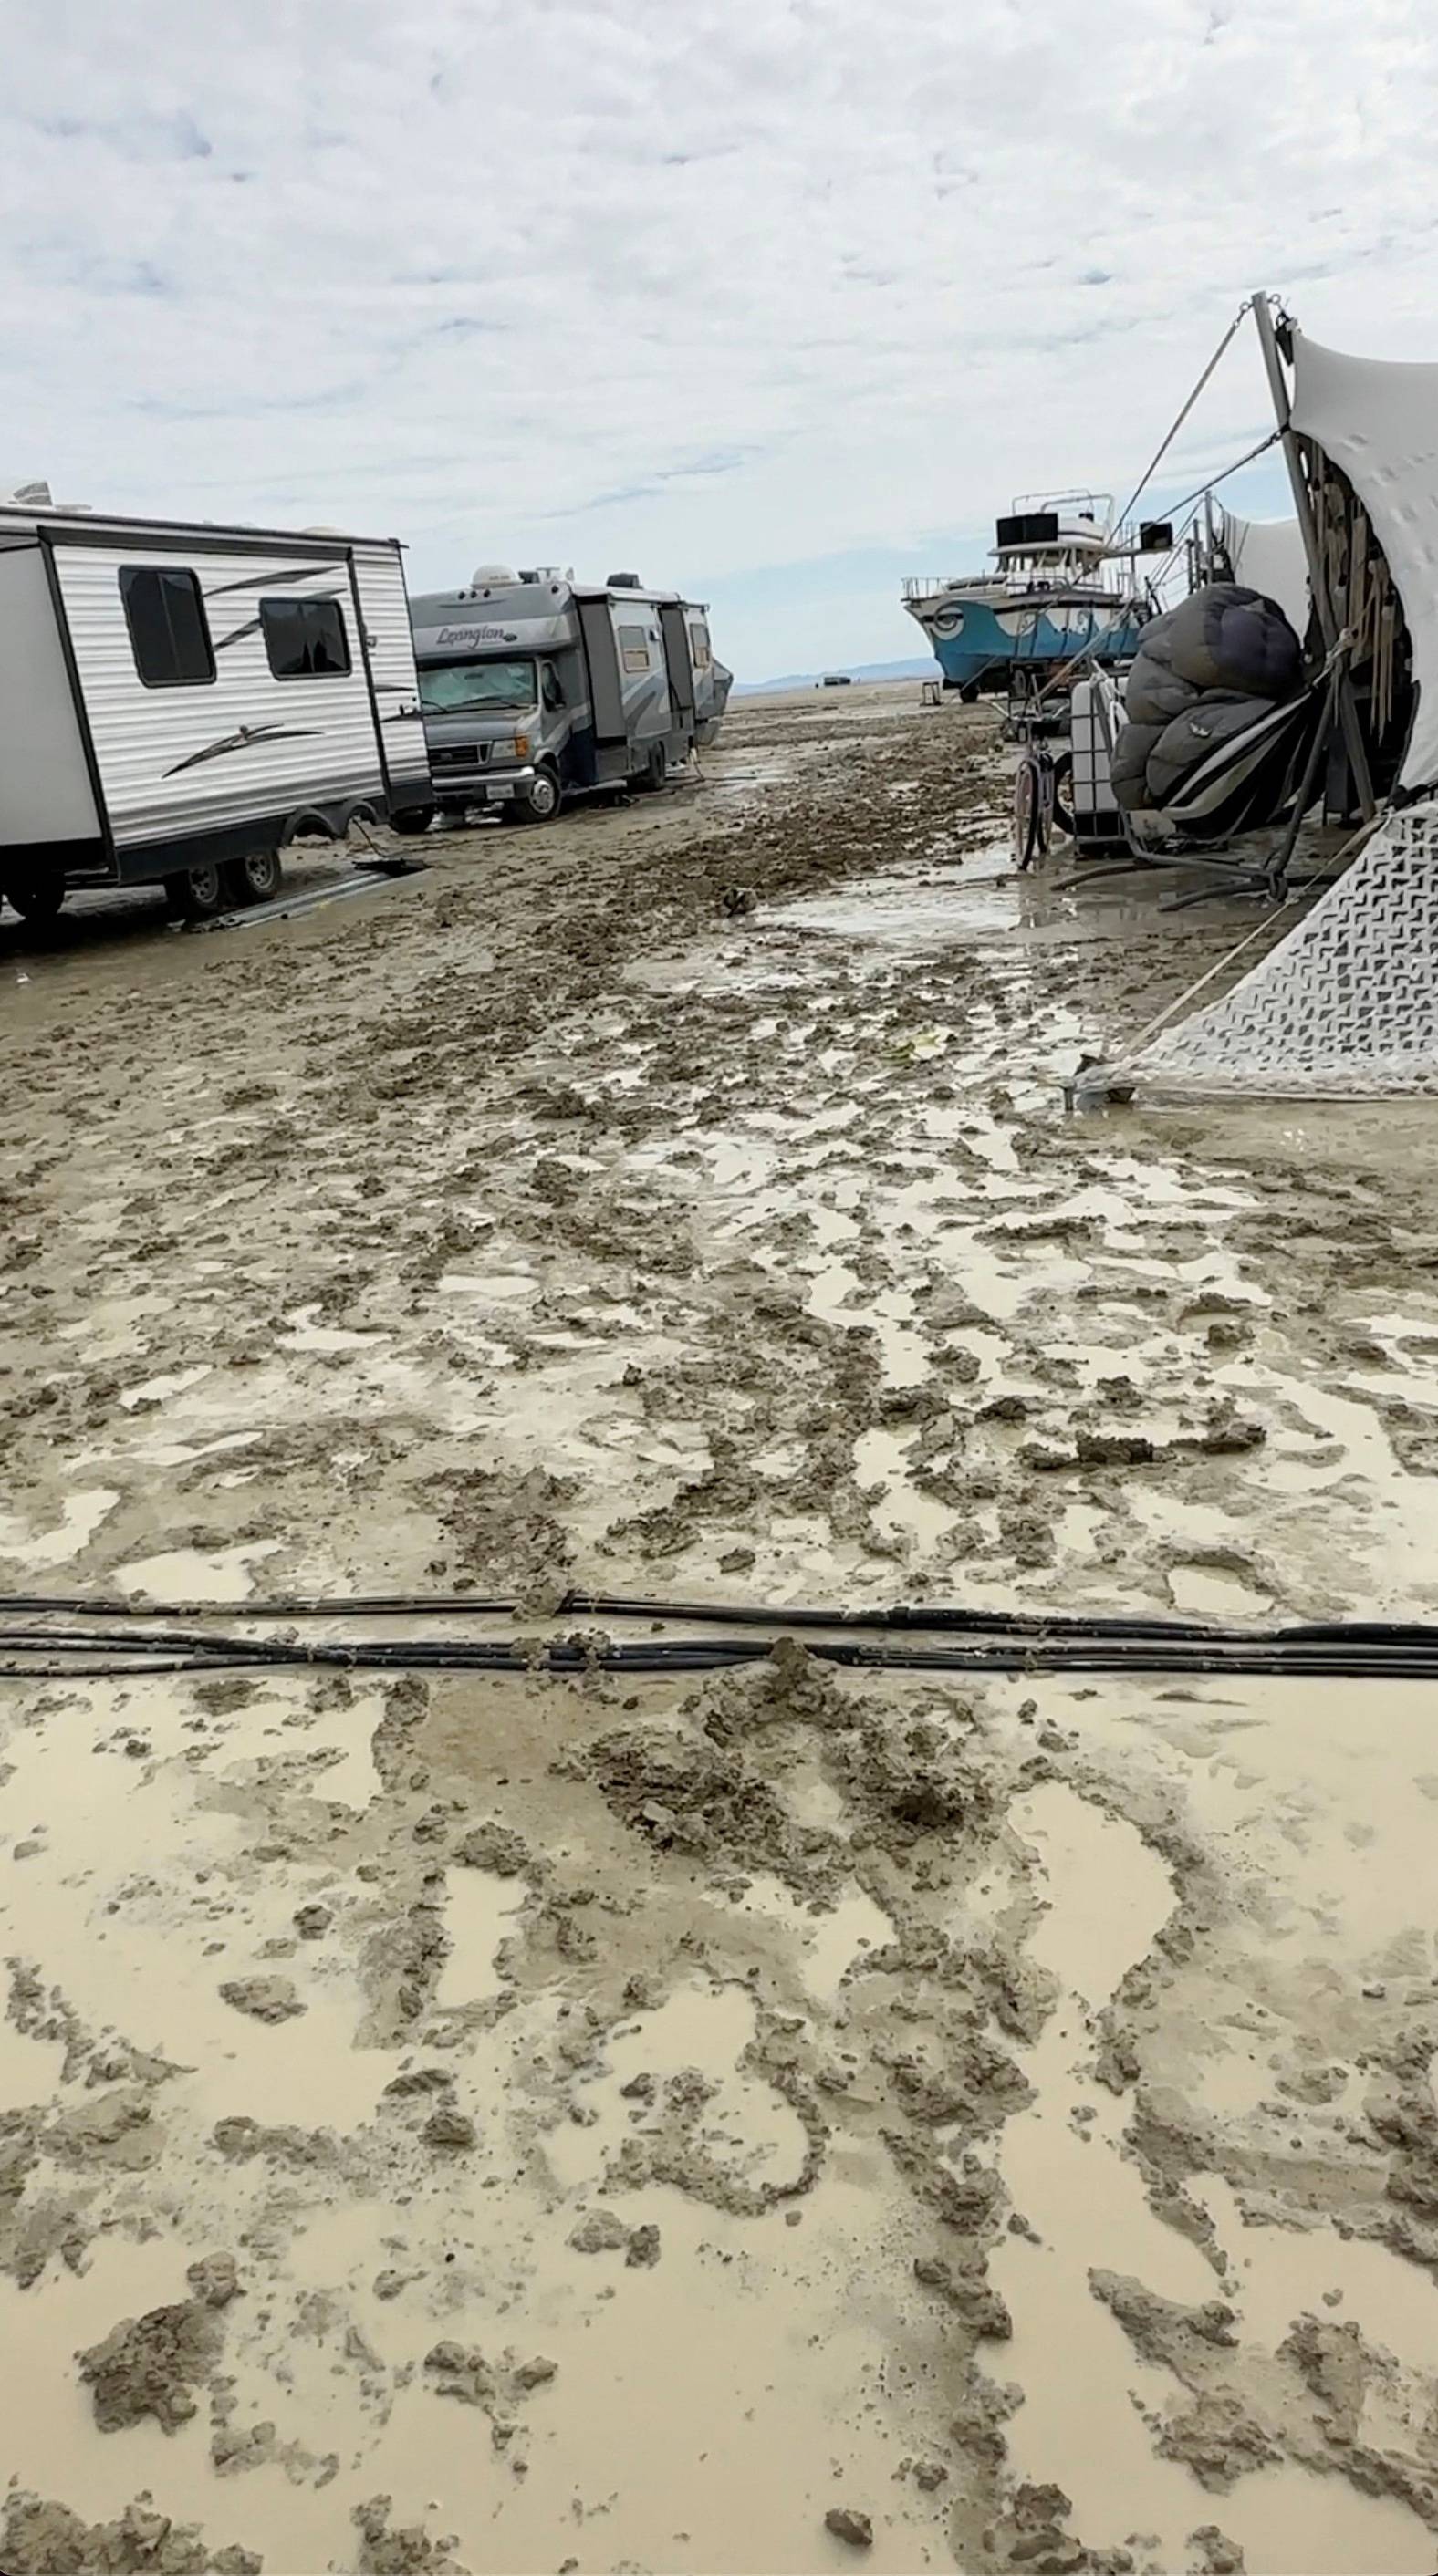 Rain and mud leave Burning Man revelers stranded in Nevada desert